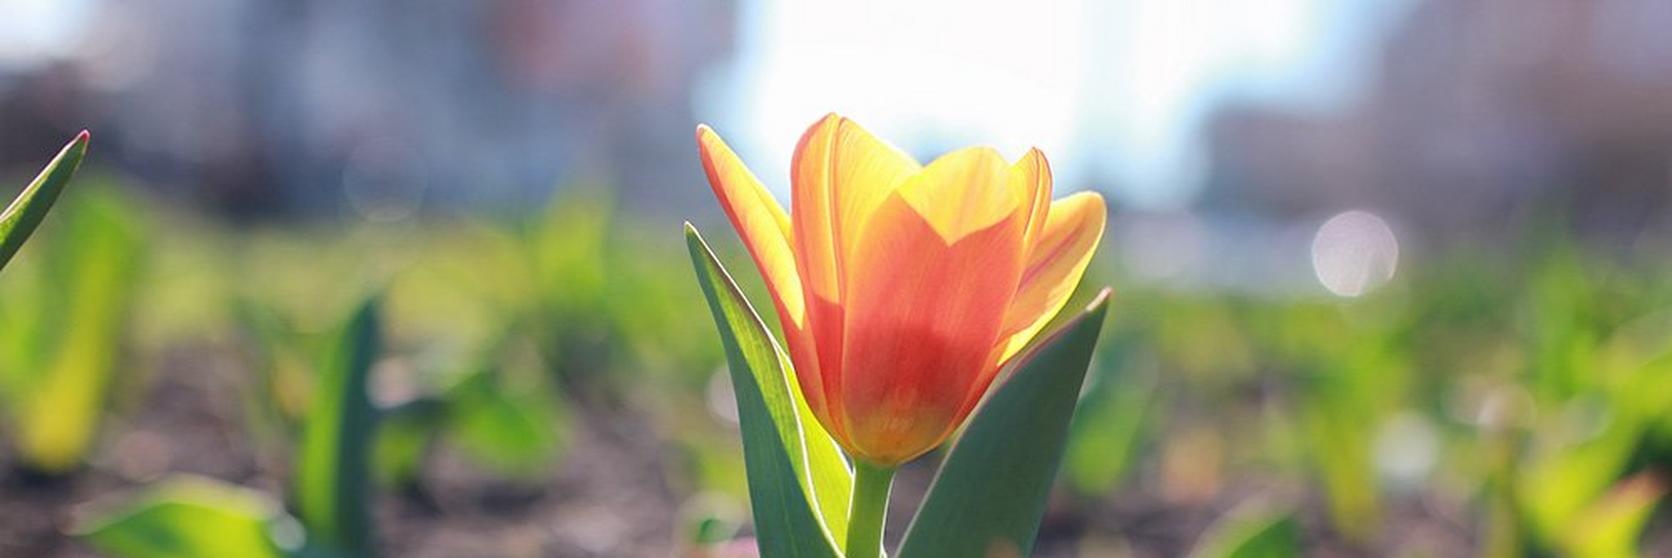 tulip-orange-flower-garden